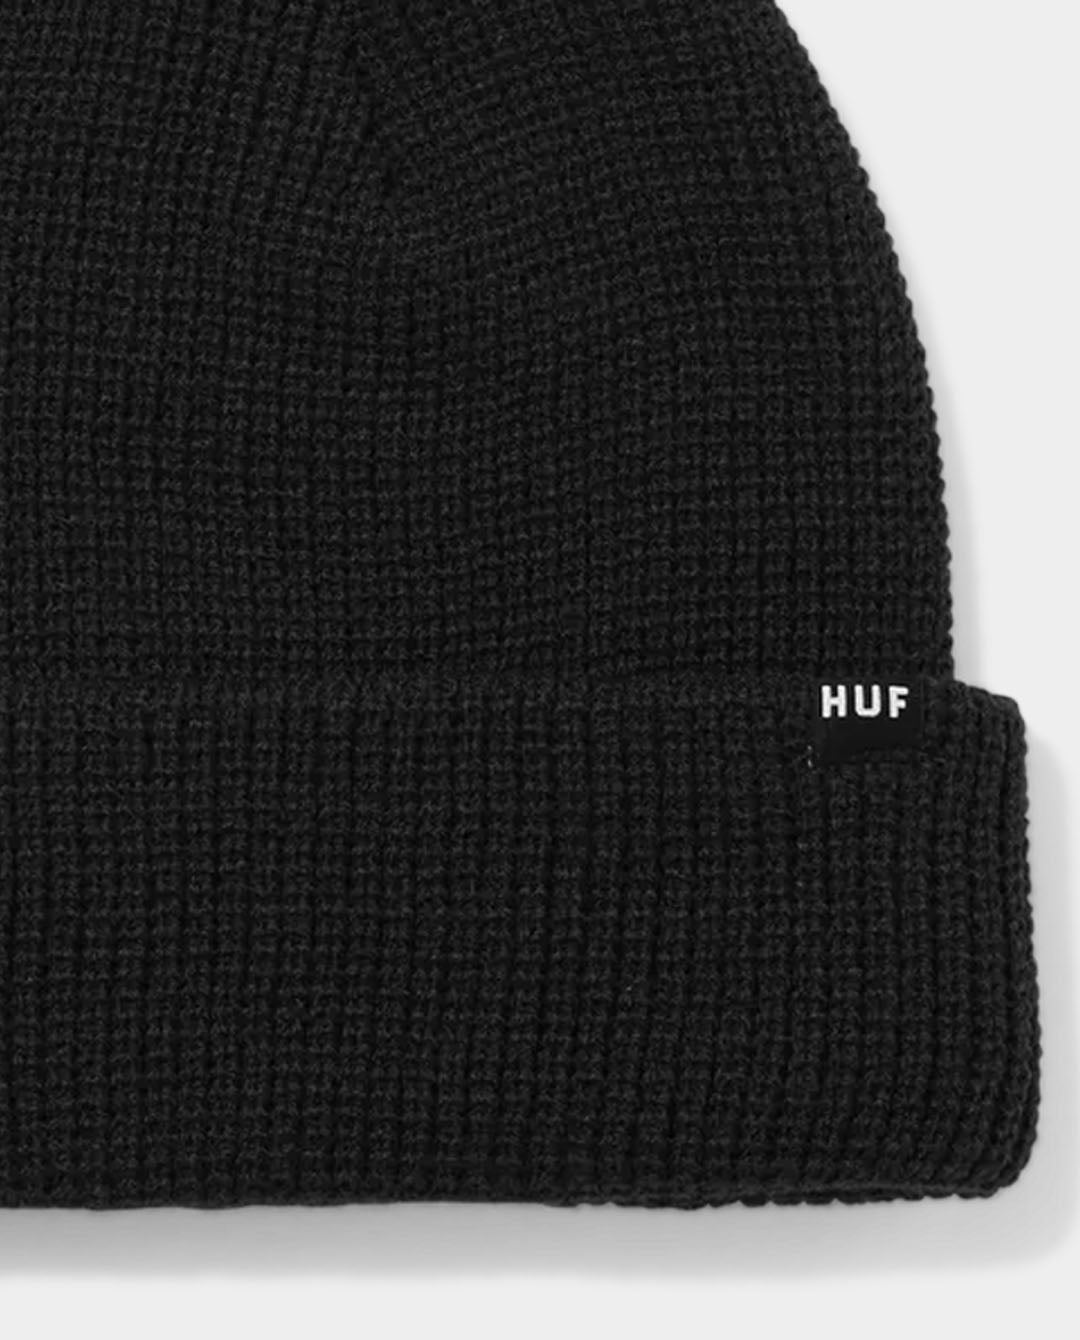 Huf - Set Usual Beanie - Black